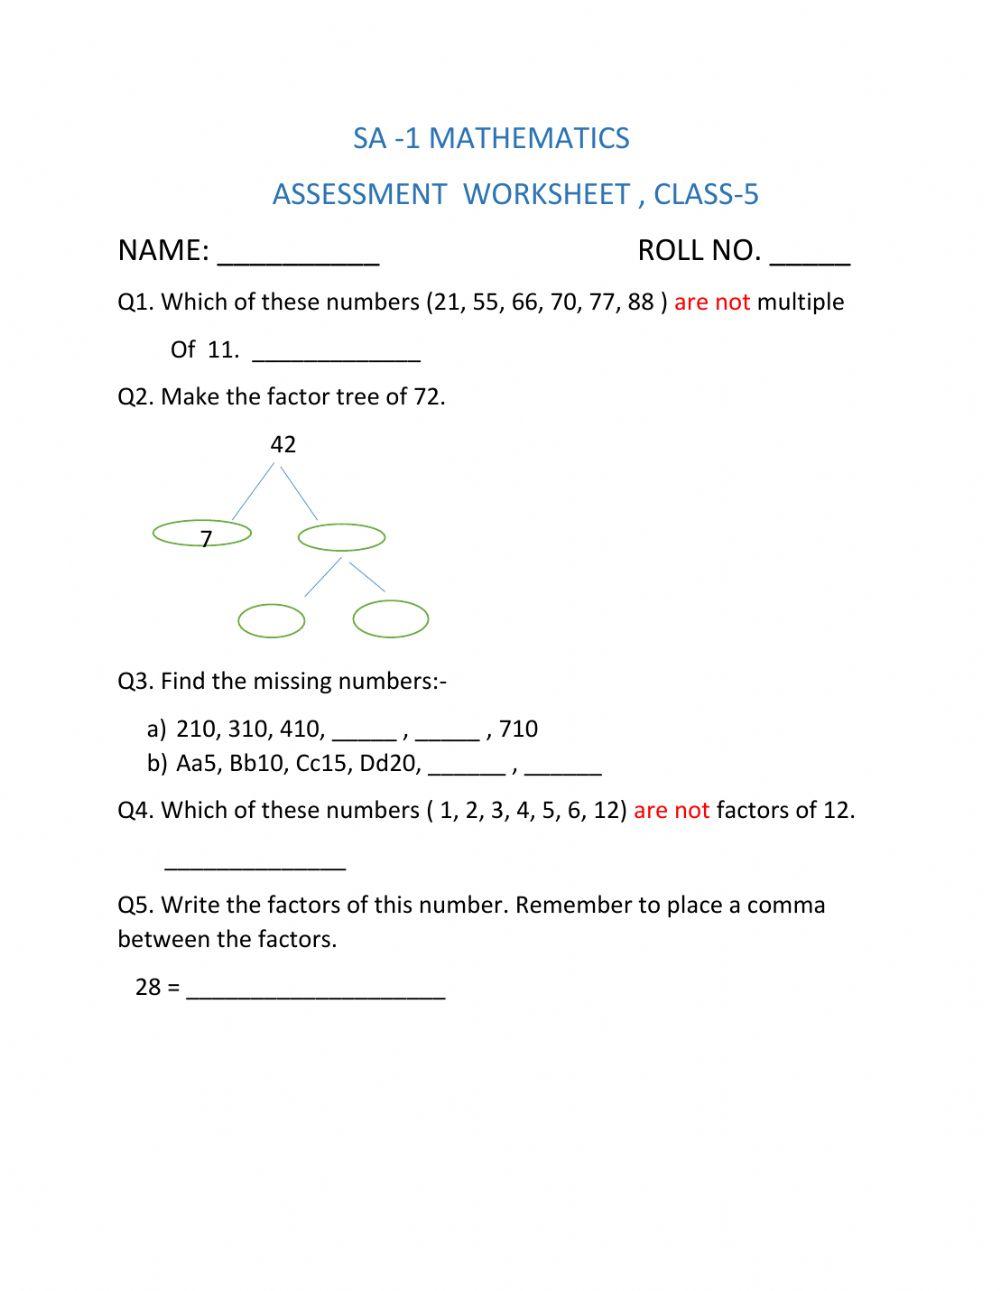 Assessment worksheet